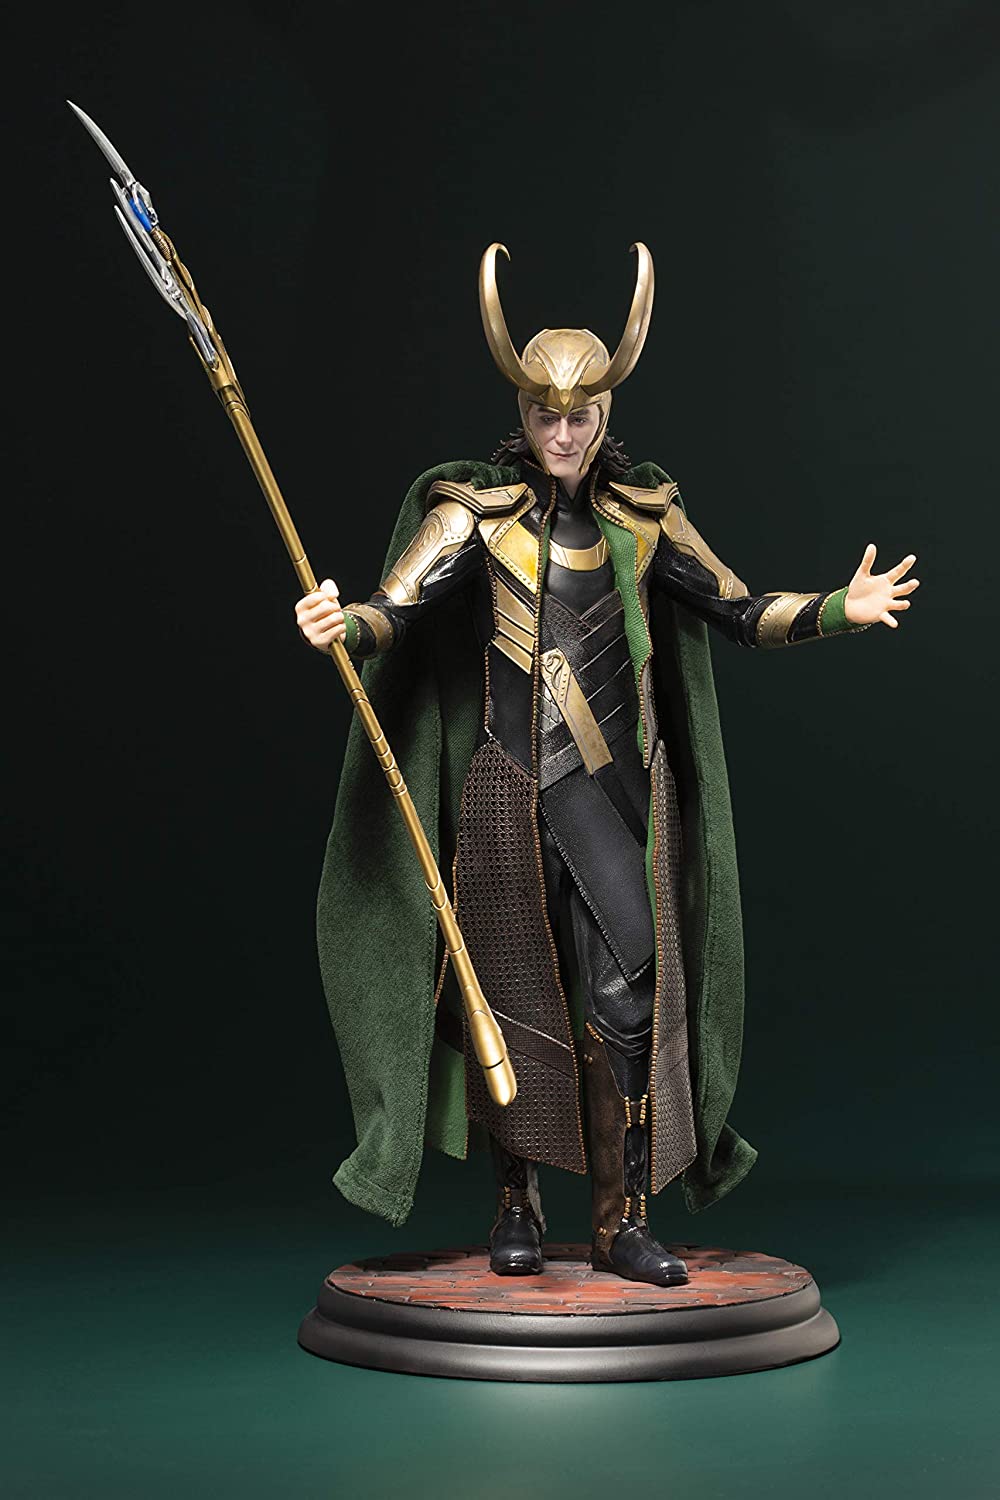 Kotobukiya - Marvel Avengers Movie - Loki Artfx Statue Product Image